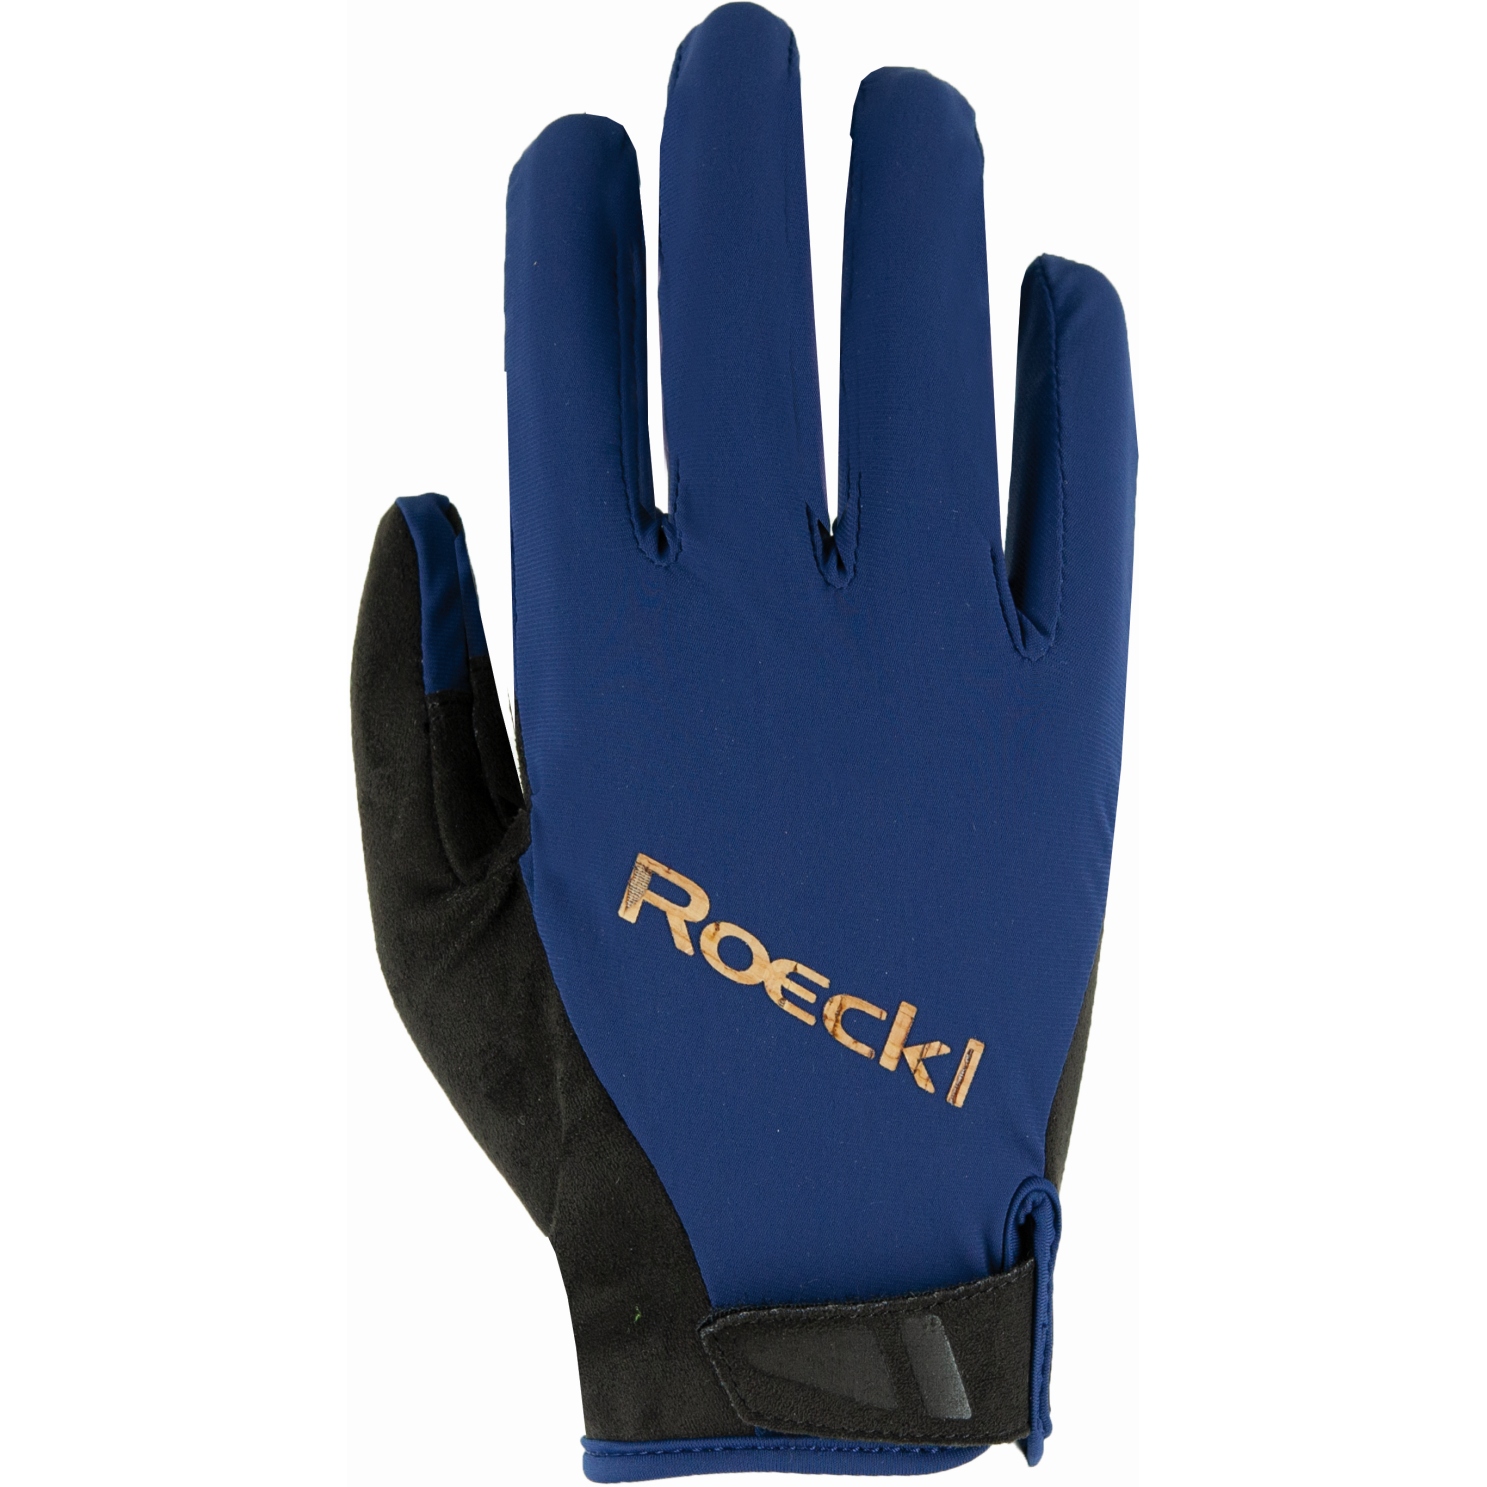 Produktbild von Roeckl Sports Mora Fahrradhandschuhe - dark blue 0581